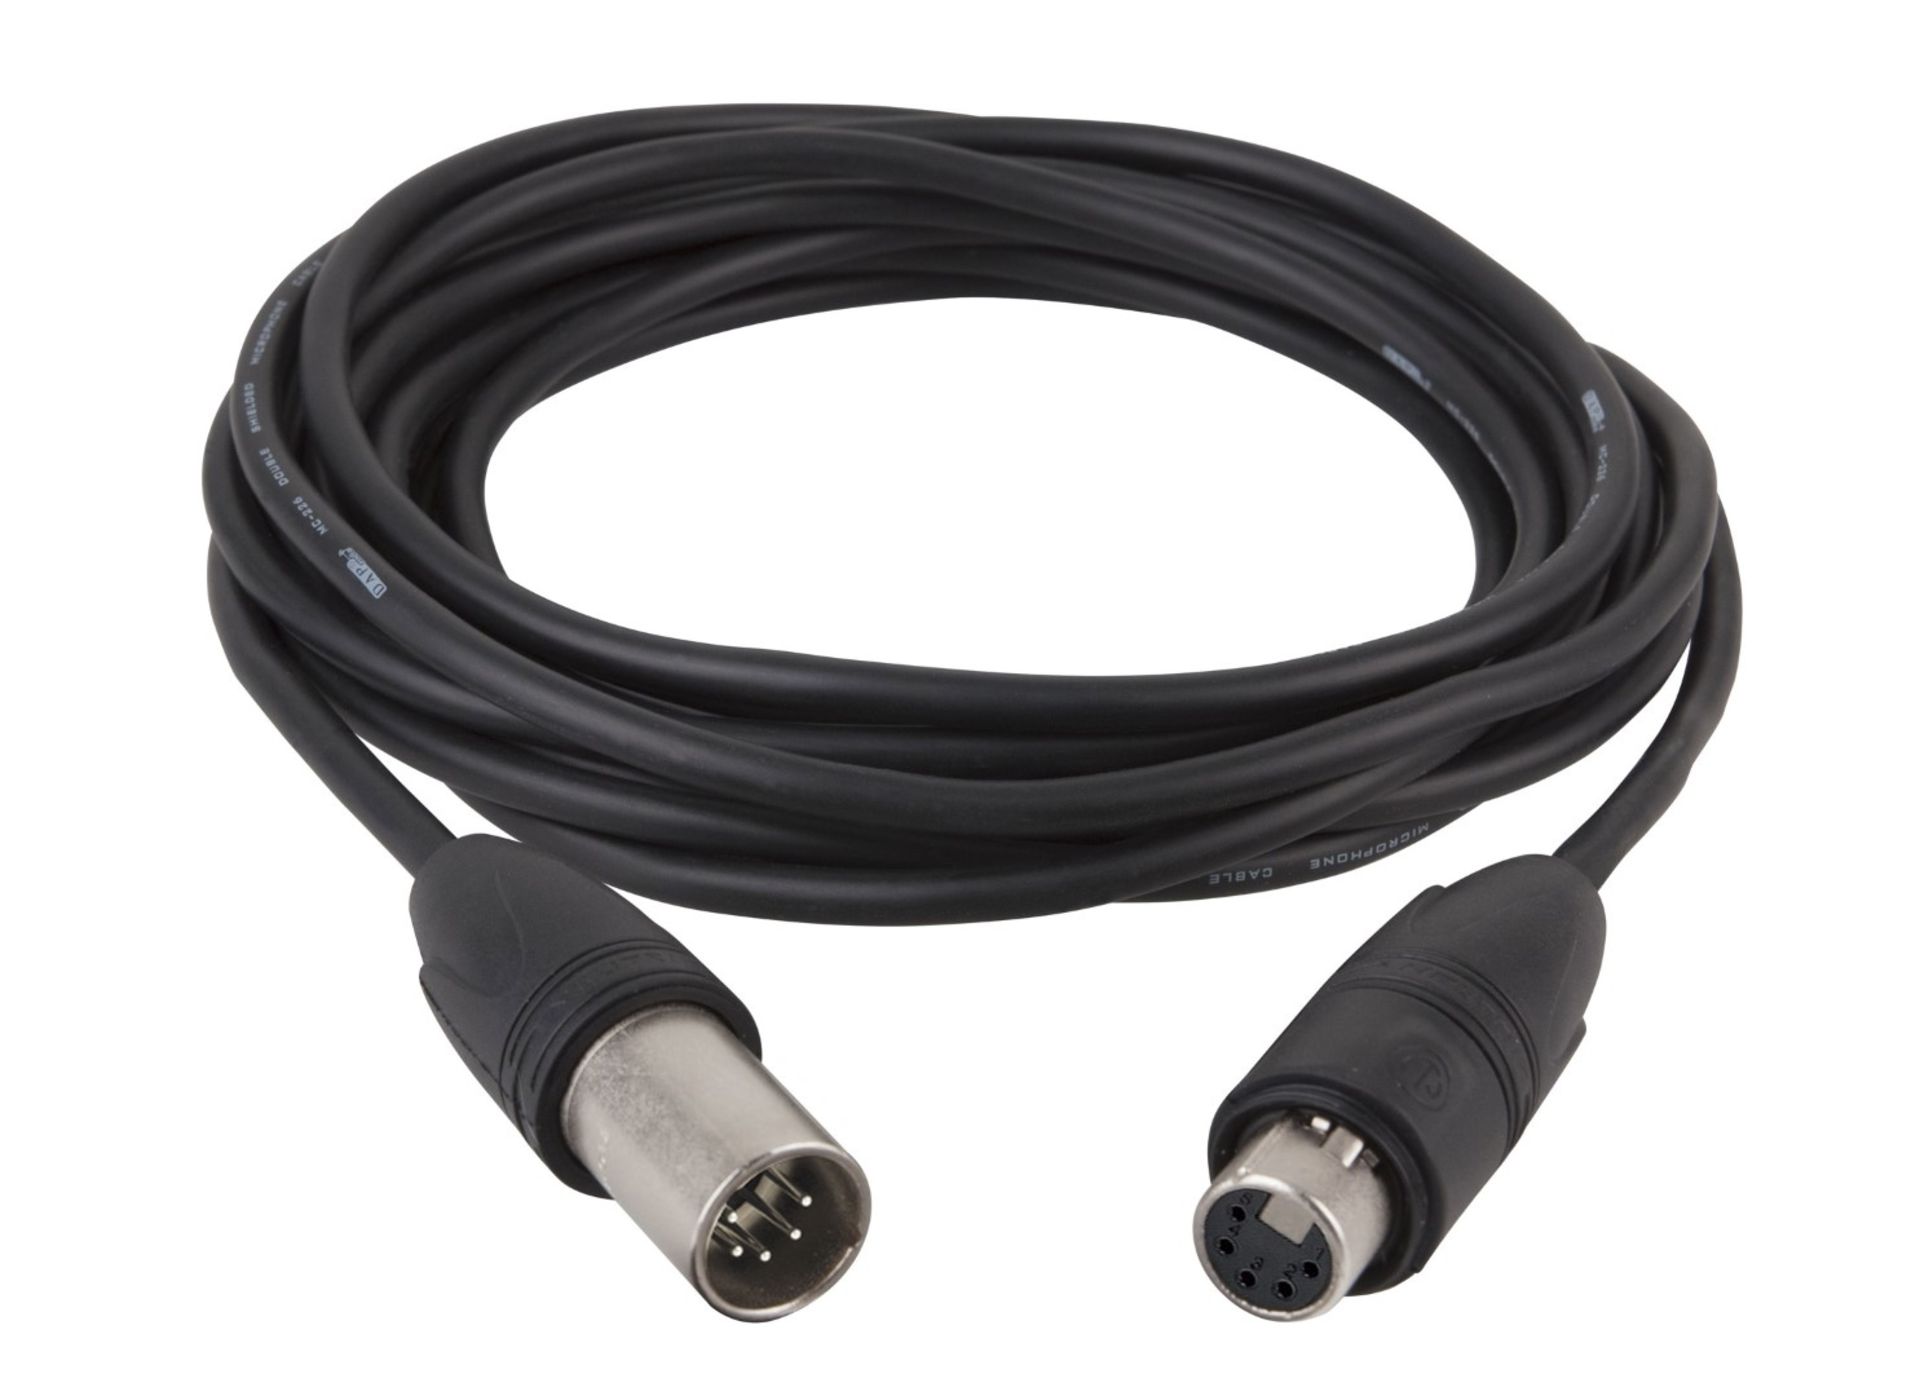 10 x DMX 10-Metre, 5-Pin Cables - New / Unused Stock - Ref: 505 - CL581 - Location: Altrincham WA14